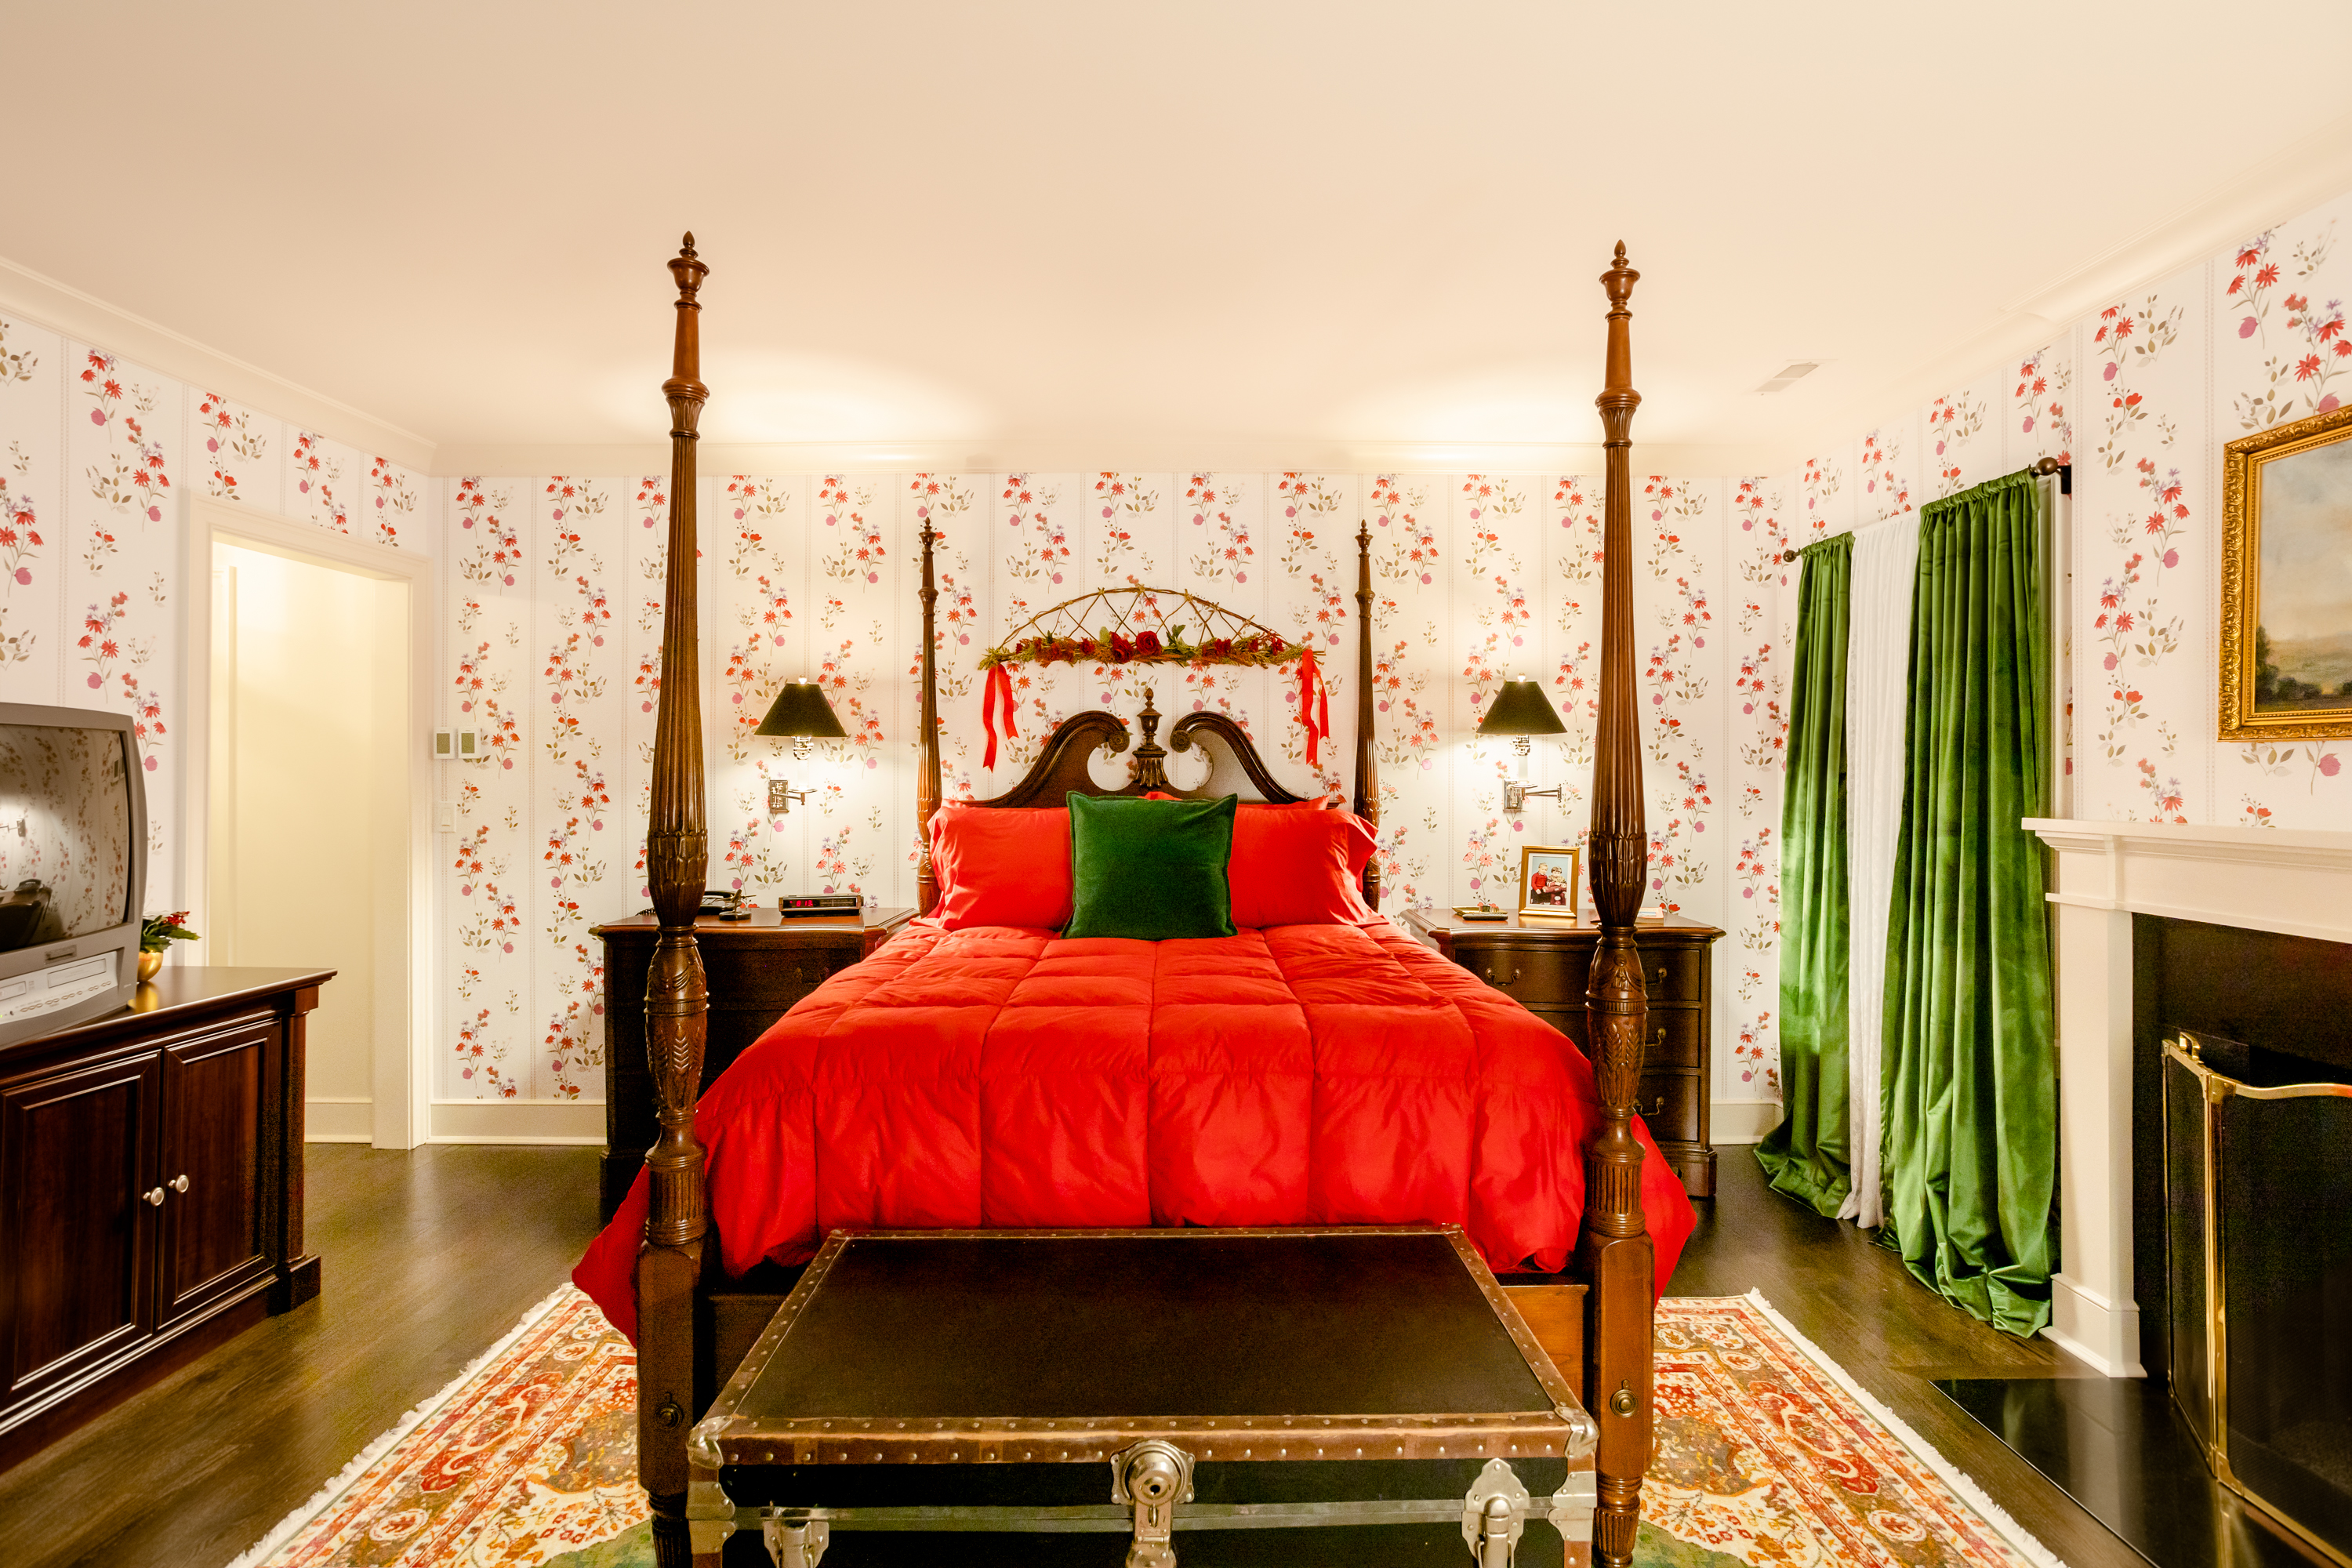 home-alone-airbnb-04-bedroom-credit-sarah-crowley.jpg